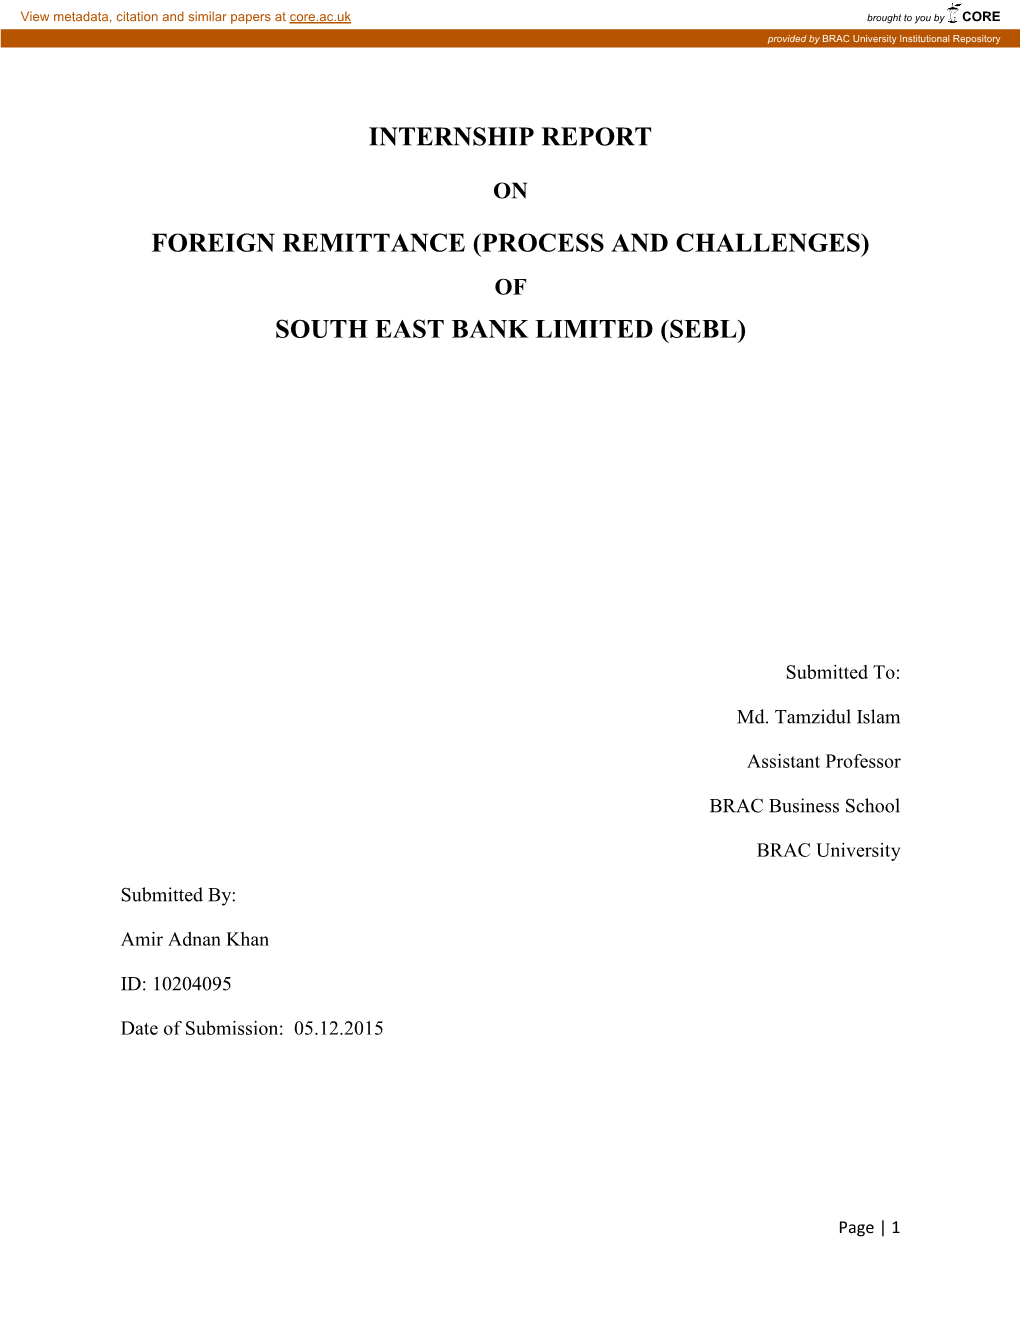 Internship Report Foreign Remittance